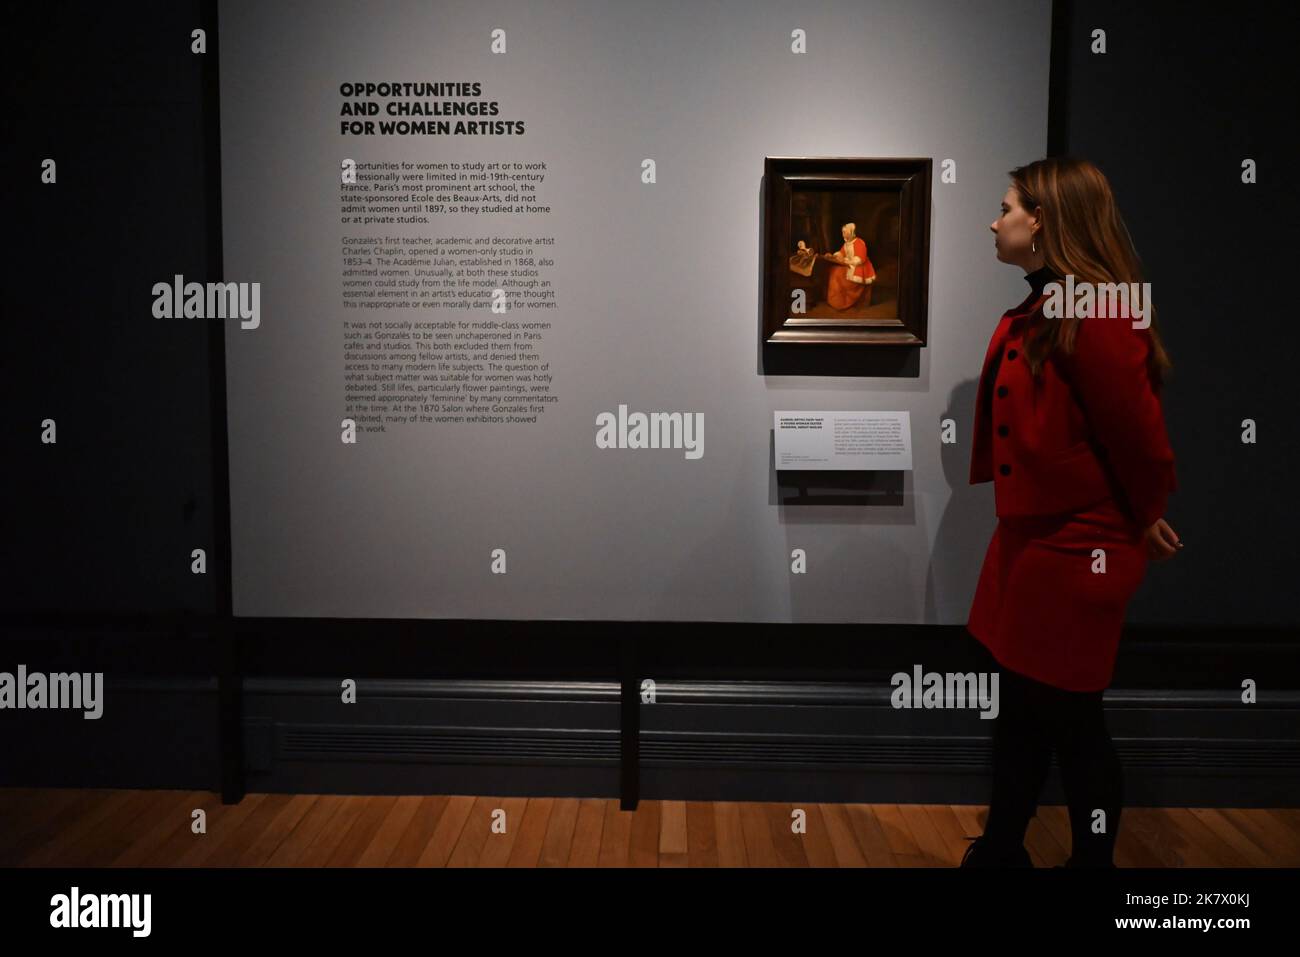 La prima mostra britannica ideata intorno al ritratto di Eva Gonzalès (1870) di Édouard Manet (1832-1883). Il dipinto, acquisito da Hugh Lane, è stato del 20th ° secolo considerato come il più famoso dipinto francese moderno nel Regno Unito e in Irlanda. Questa è la prima di una nuova serie di mostre "Discover" che verranno allestite nella Sunley Room della National Gallery per esplorare i dipinti più noti della collezione attraverso una lente contemporanea. La mostra prende come obiettivo il ritratto di Manet di Eva Gonzalès (1849–1883), con l’obiettivo di presentare nuove prospettive sulle donne artisti ... Foto Stock